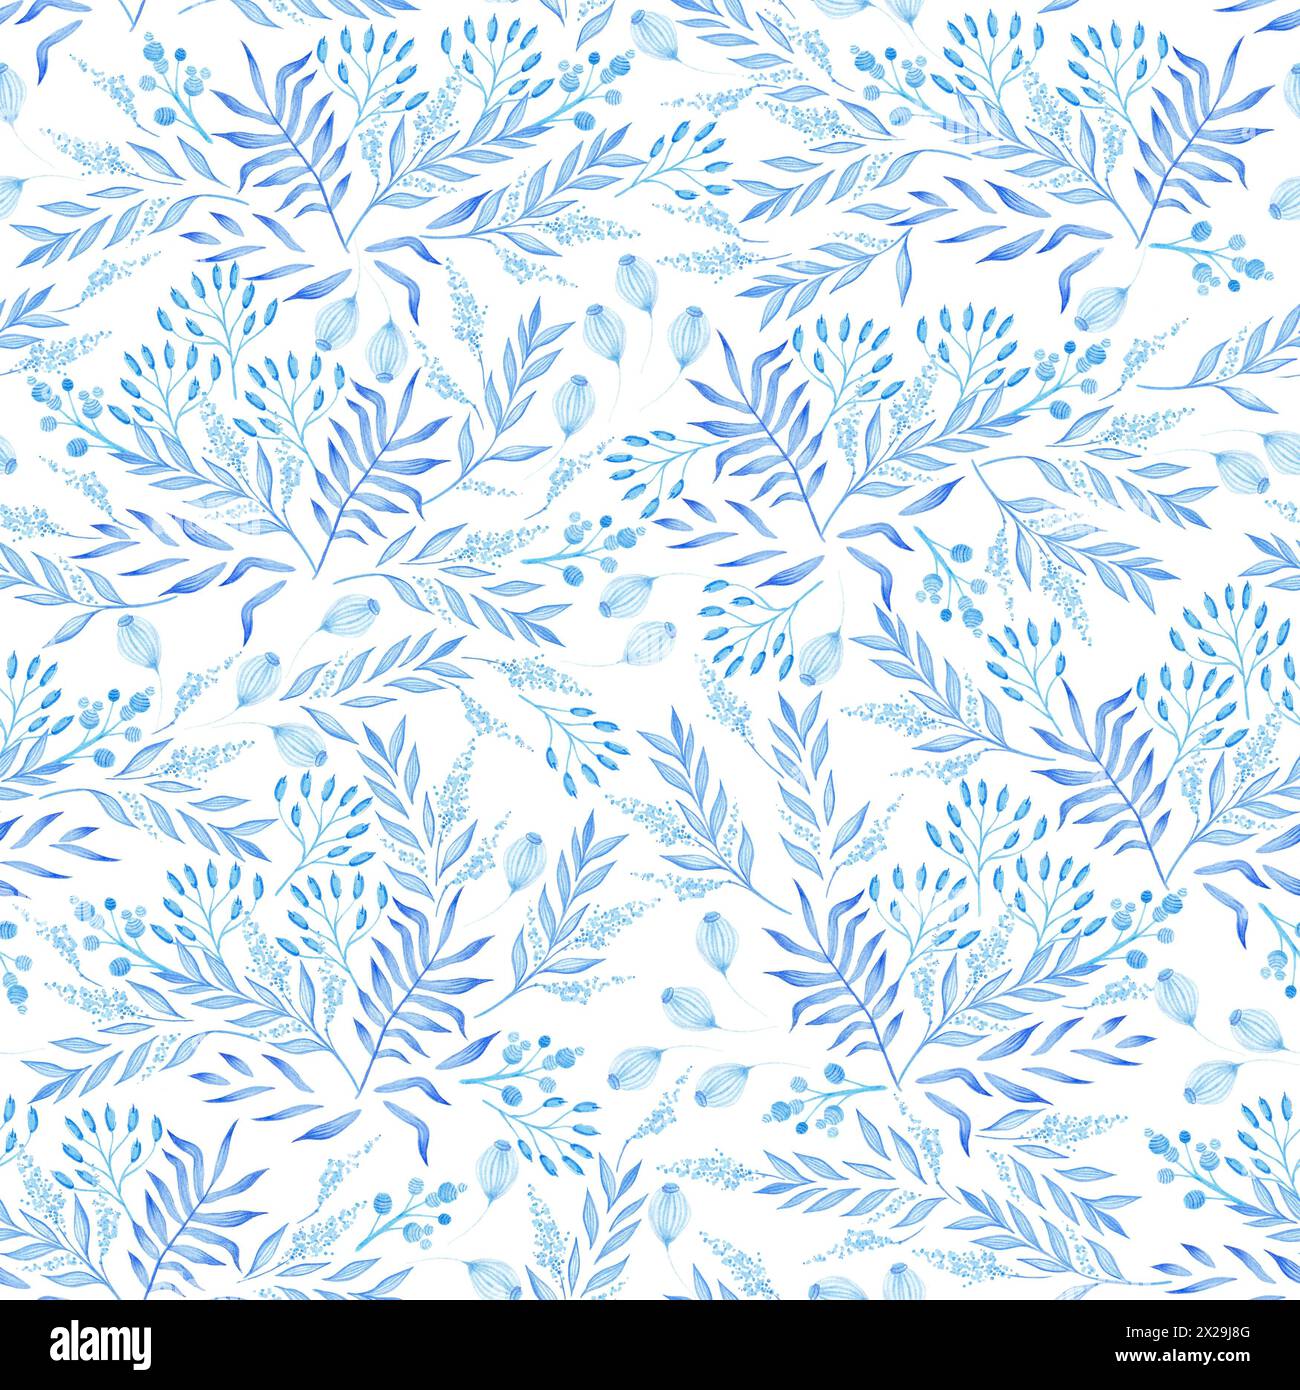 Illustrazione con motivo vegetale senza cuciture con rami e foglie blu su sfondo bianco. Tema primavera ed estate. Foto Stock